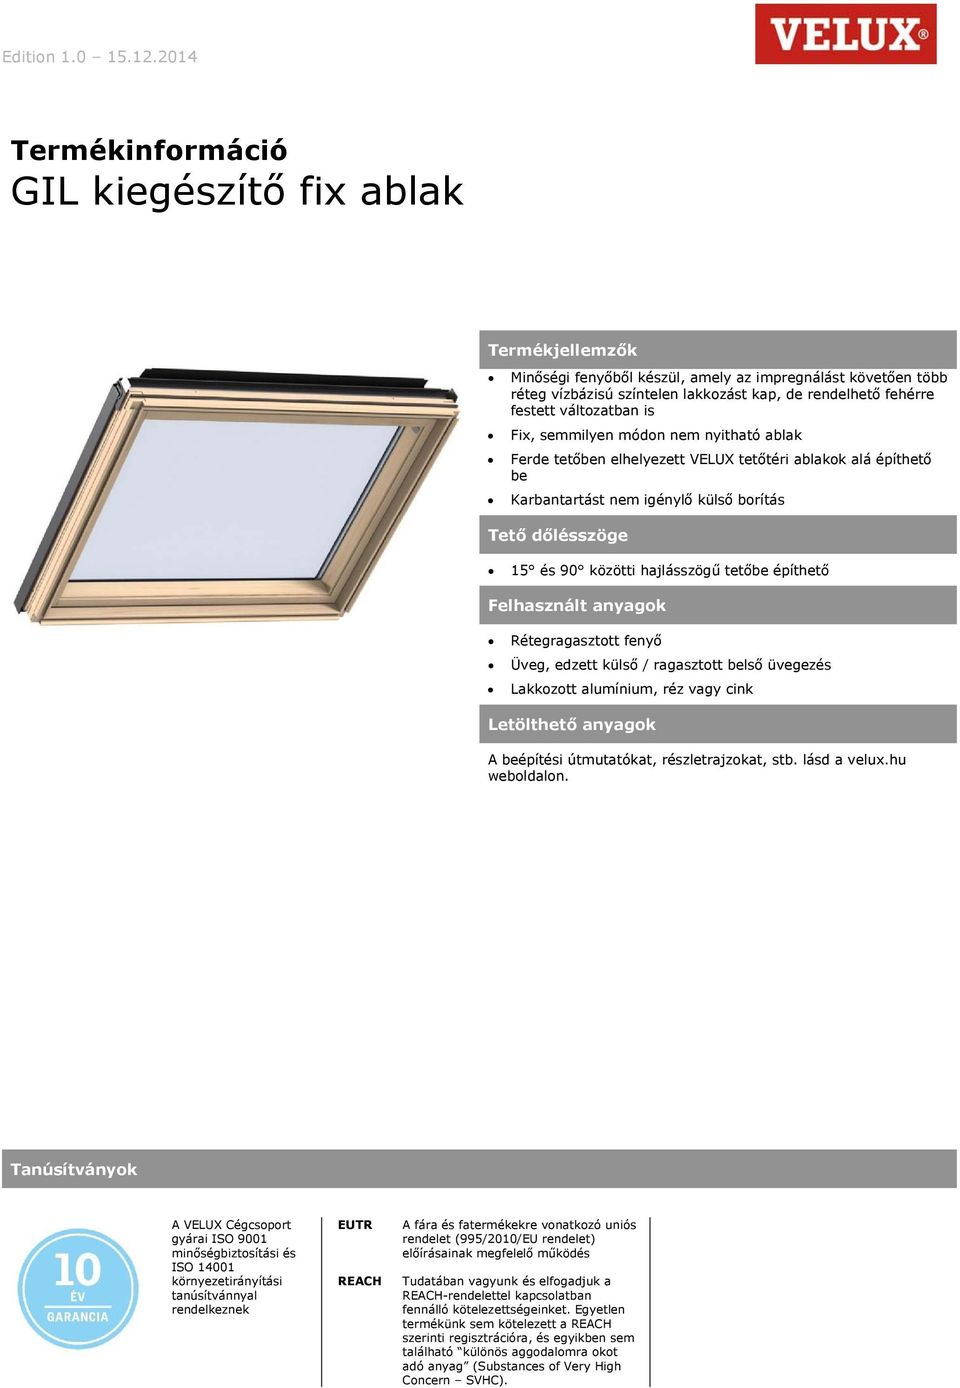 Termékinformáció GIL kiegészítő fix ablak - PDF Free Download